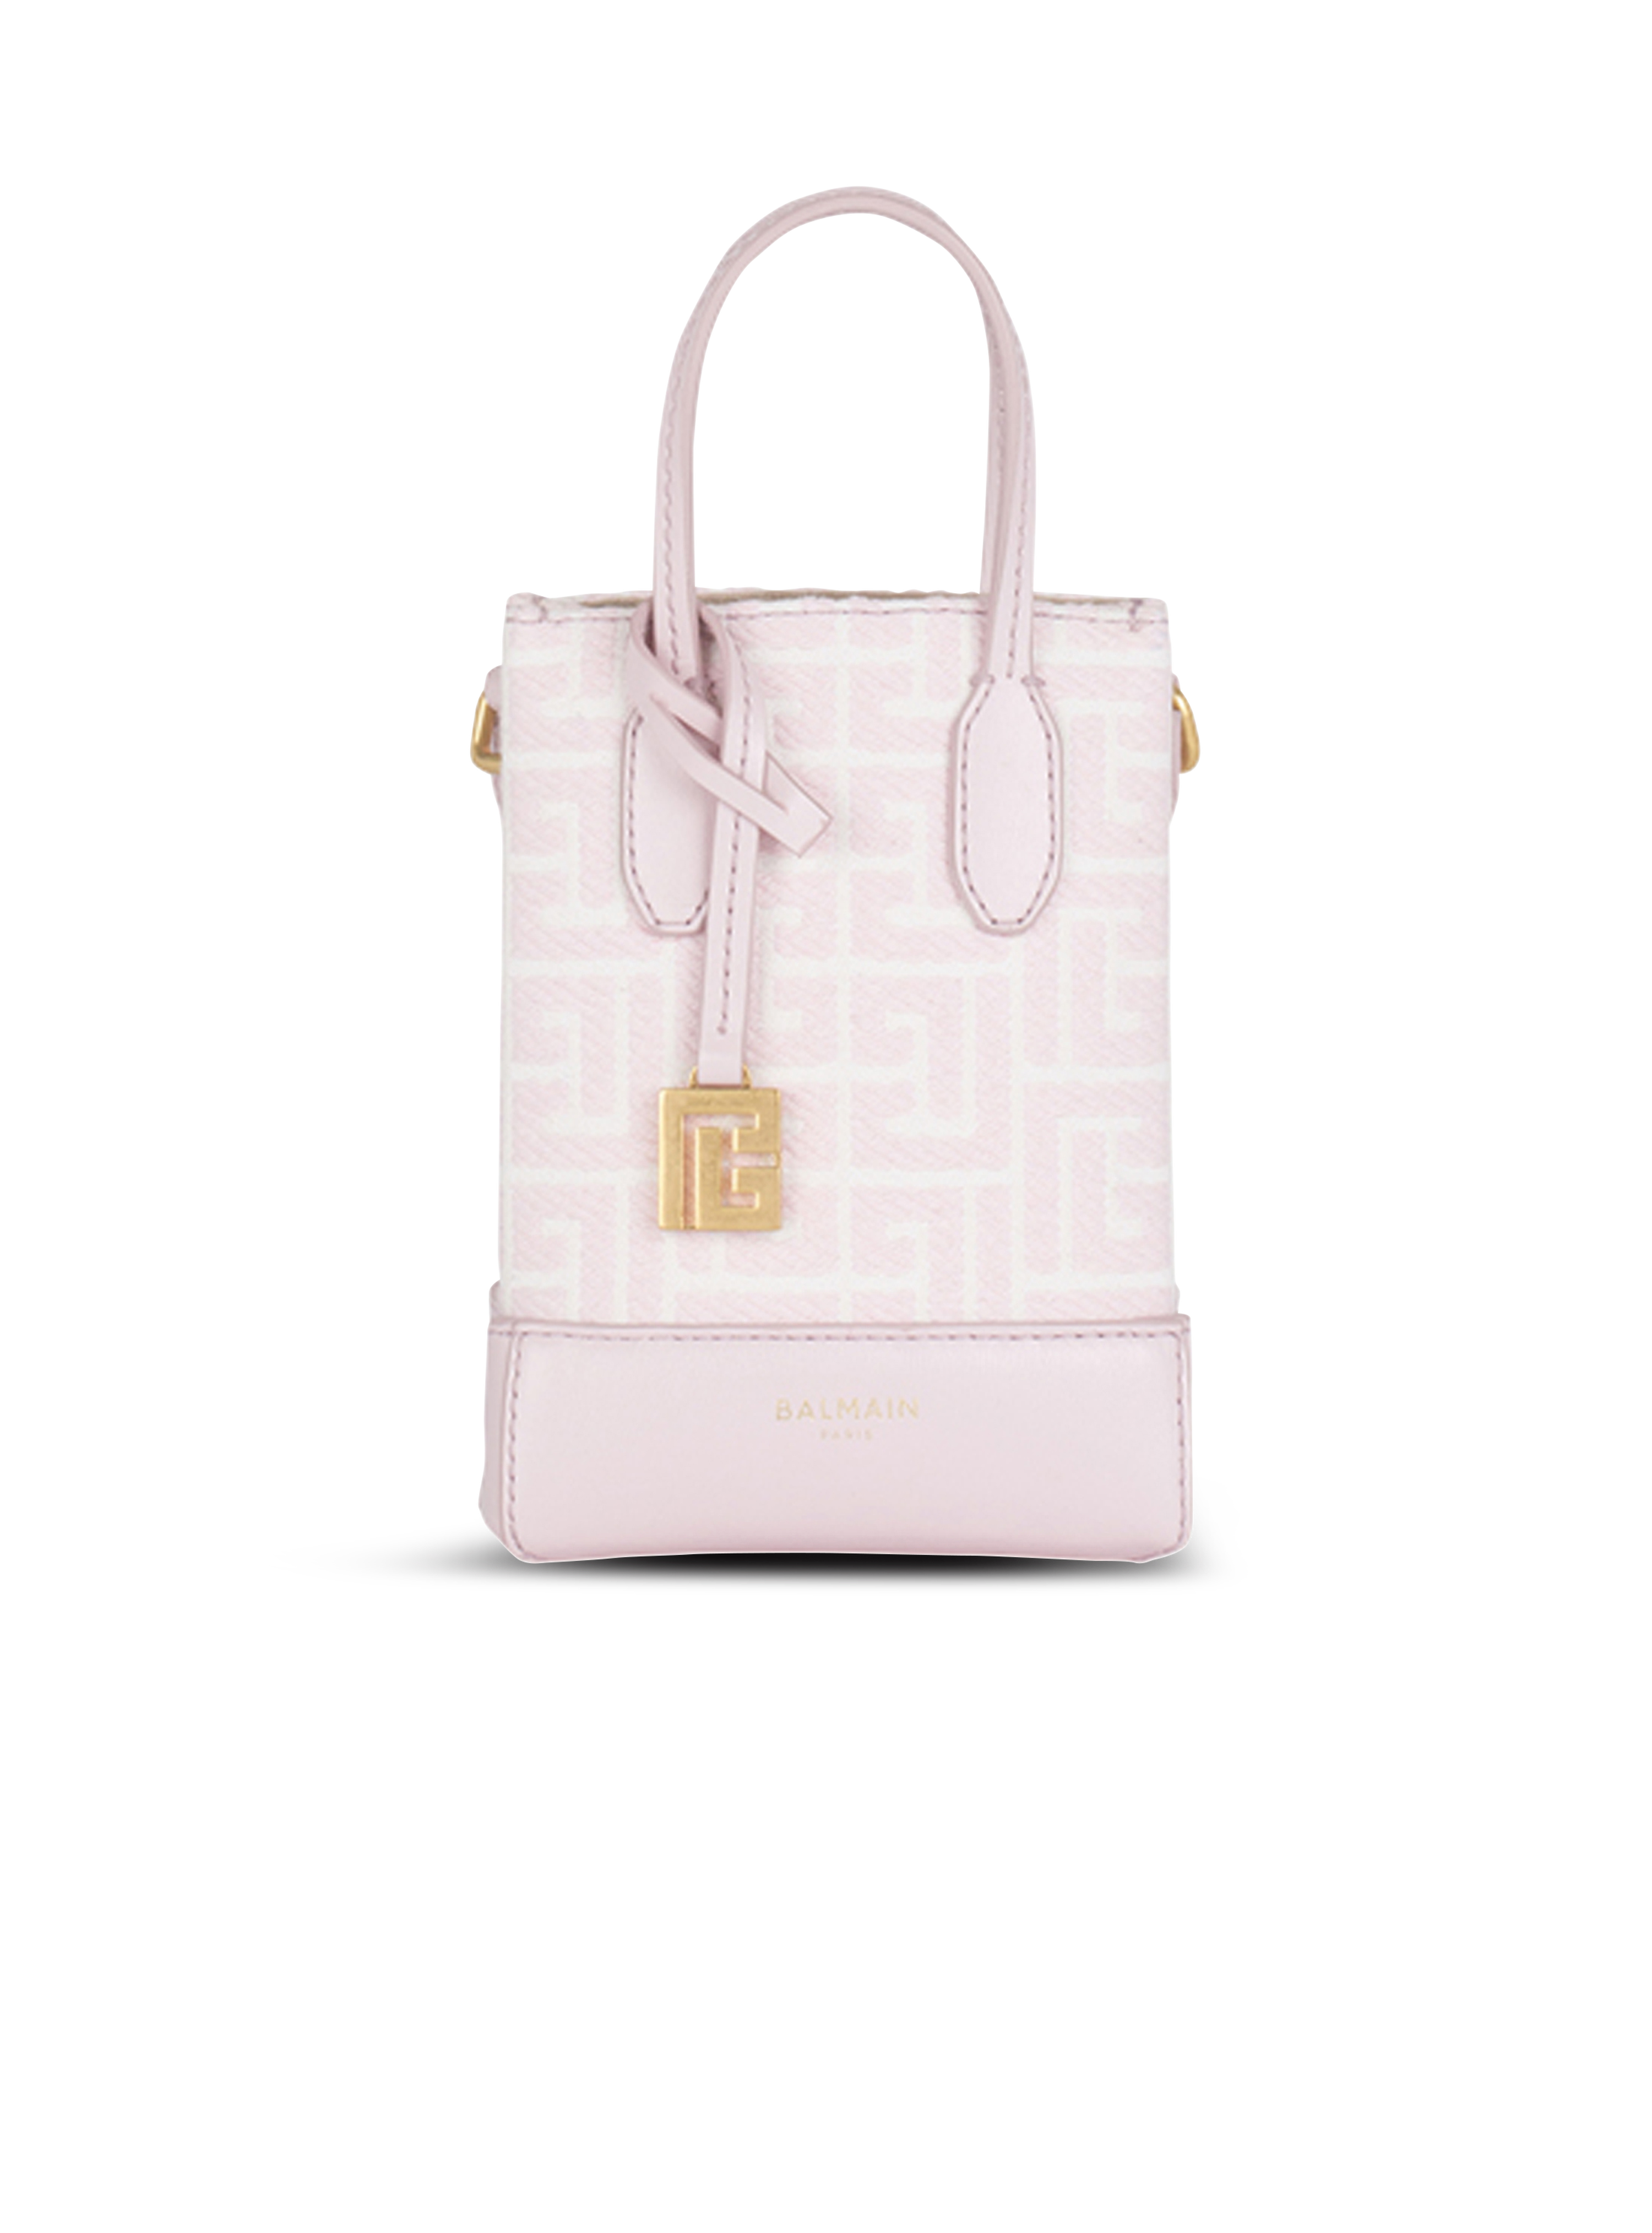 IN ESCLUSIVA - Mini borsa shopping bicolor, rosa